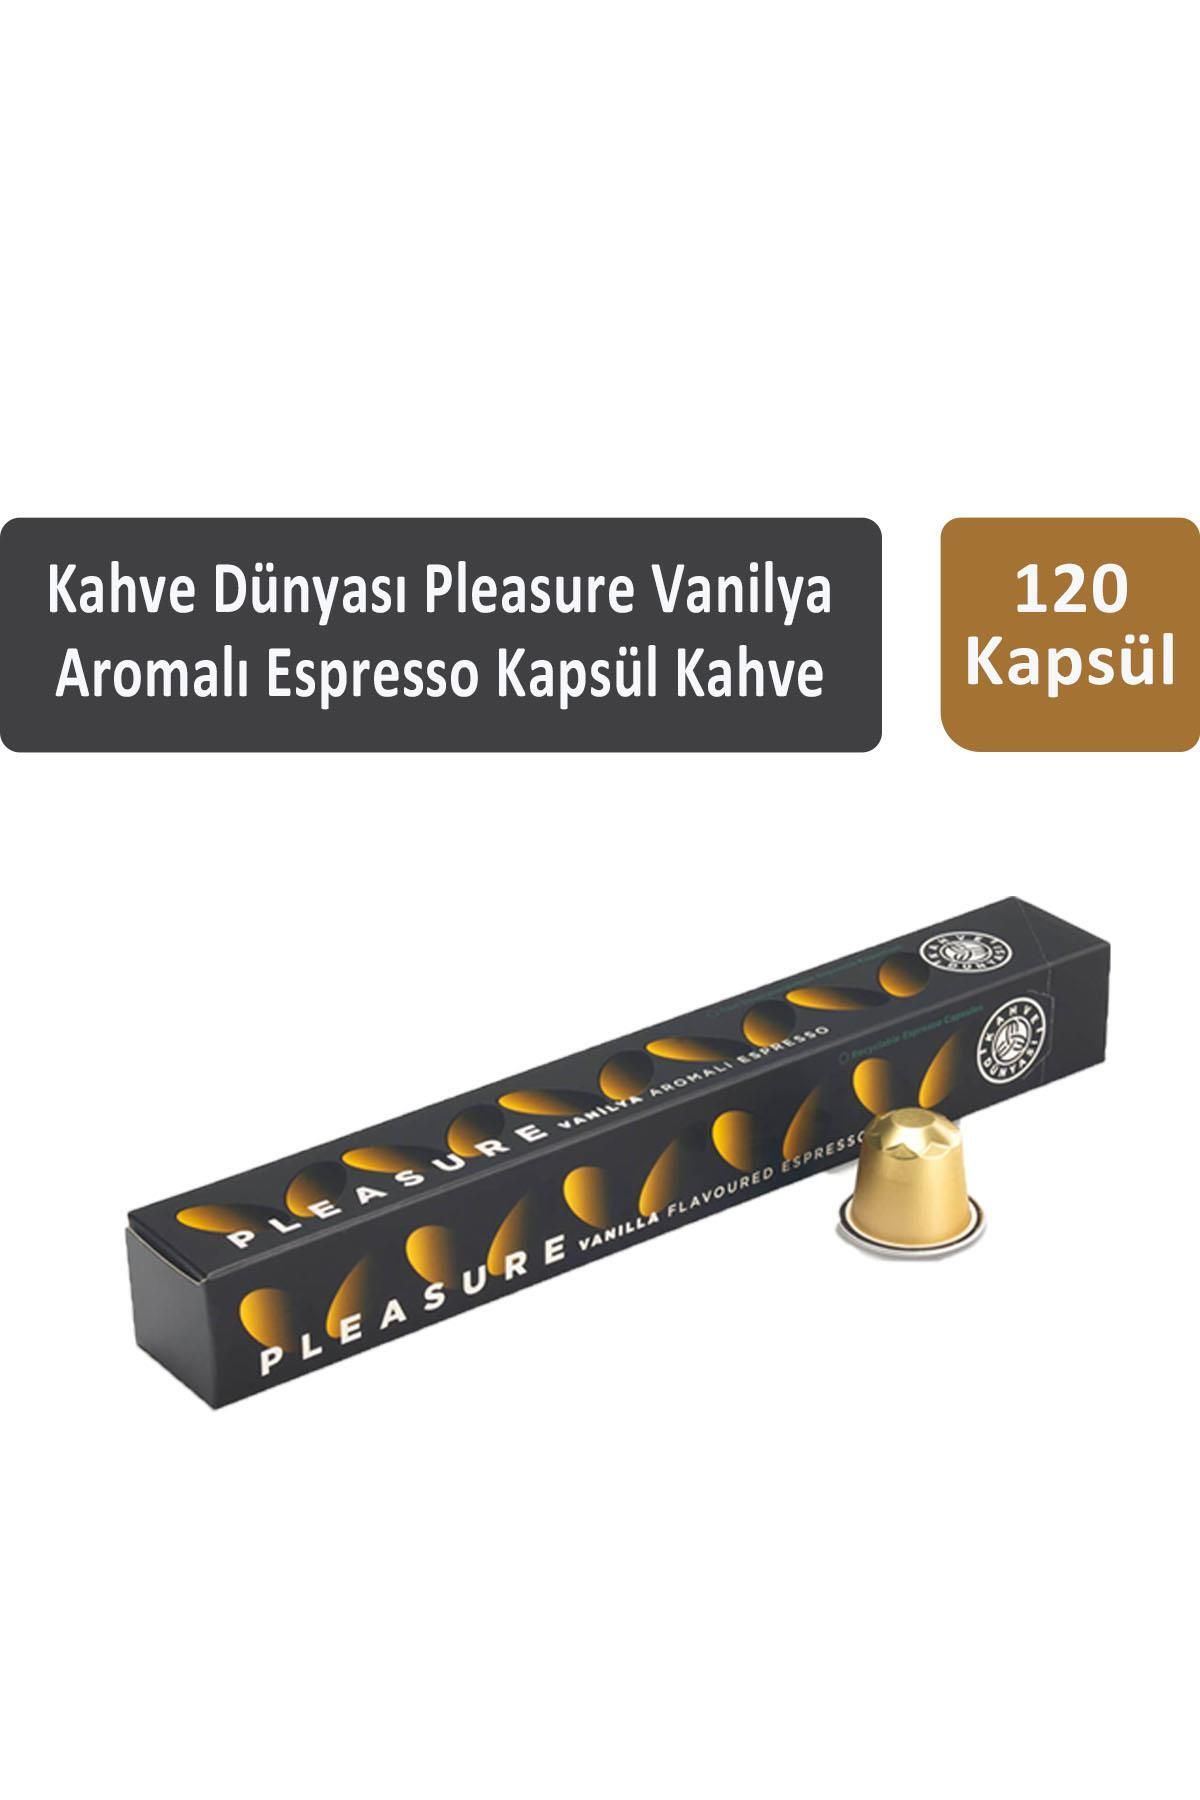 Kahve Dünyası Pleasure Vanilya Aromalı Espresso Kapsül Kahve 120 Kapsül